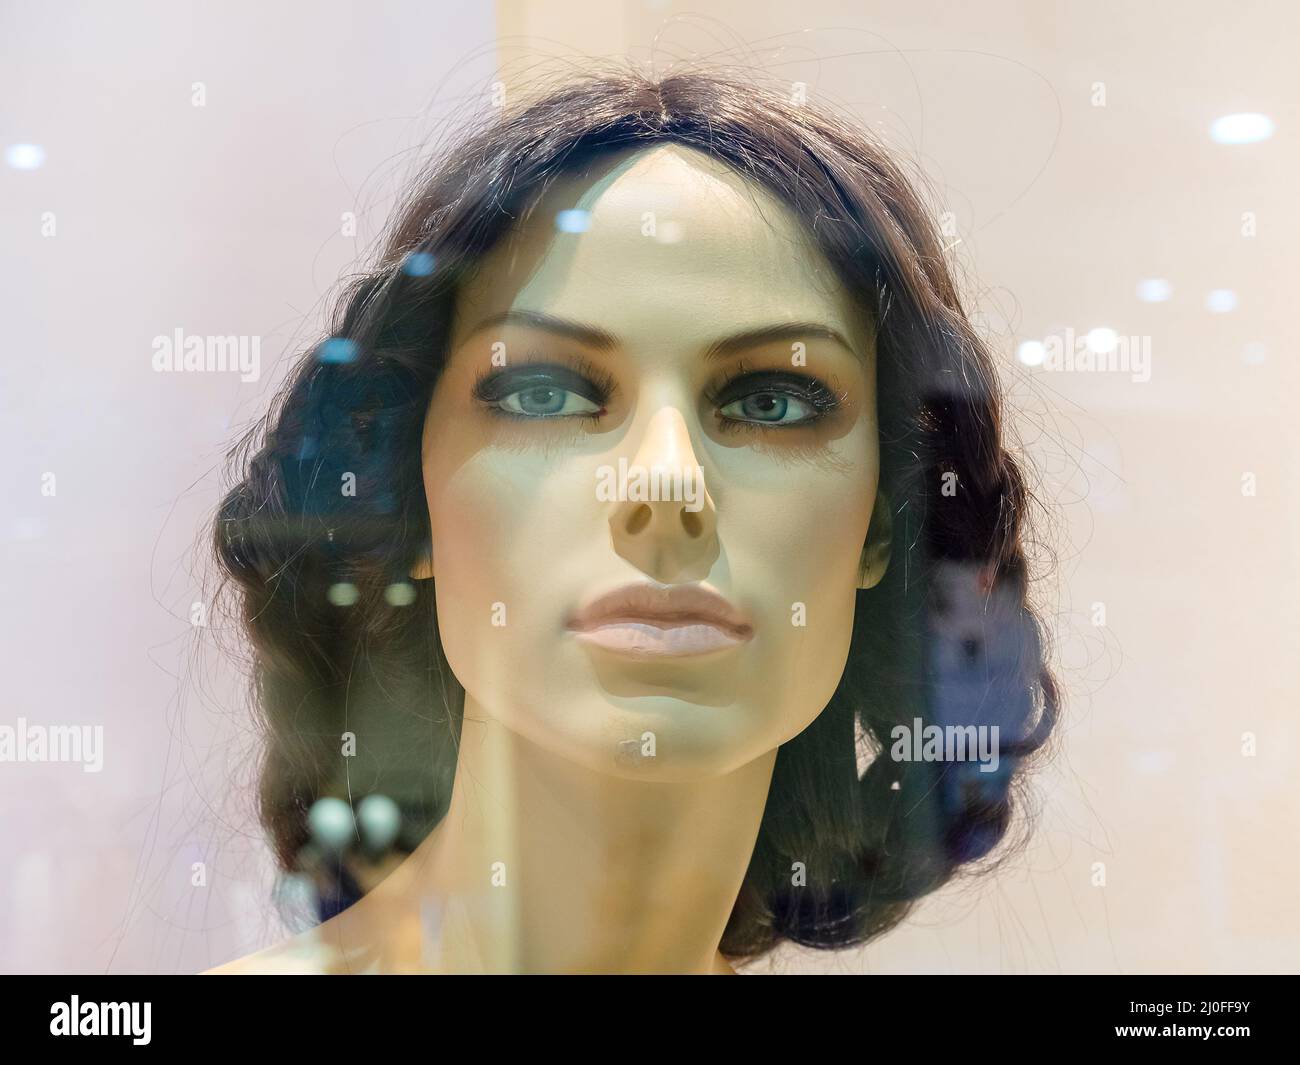 Jefe de maniquí femenino realista detrás del cristal de la ventana de la tienda Foto de stock